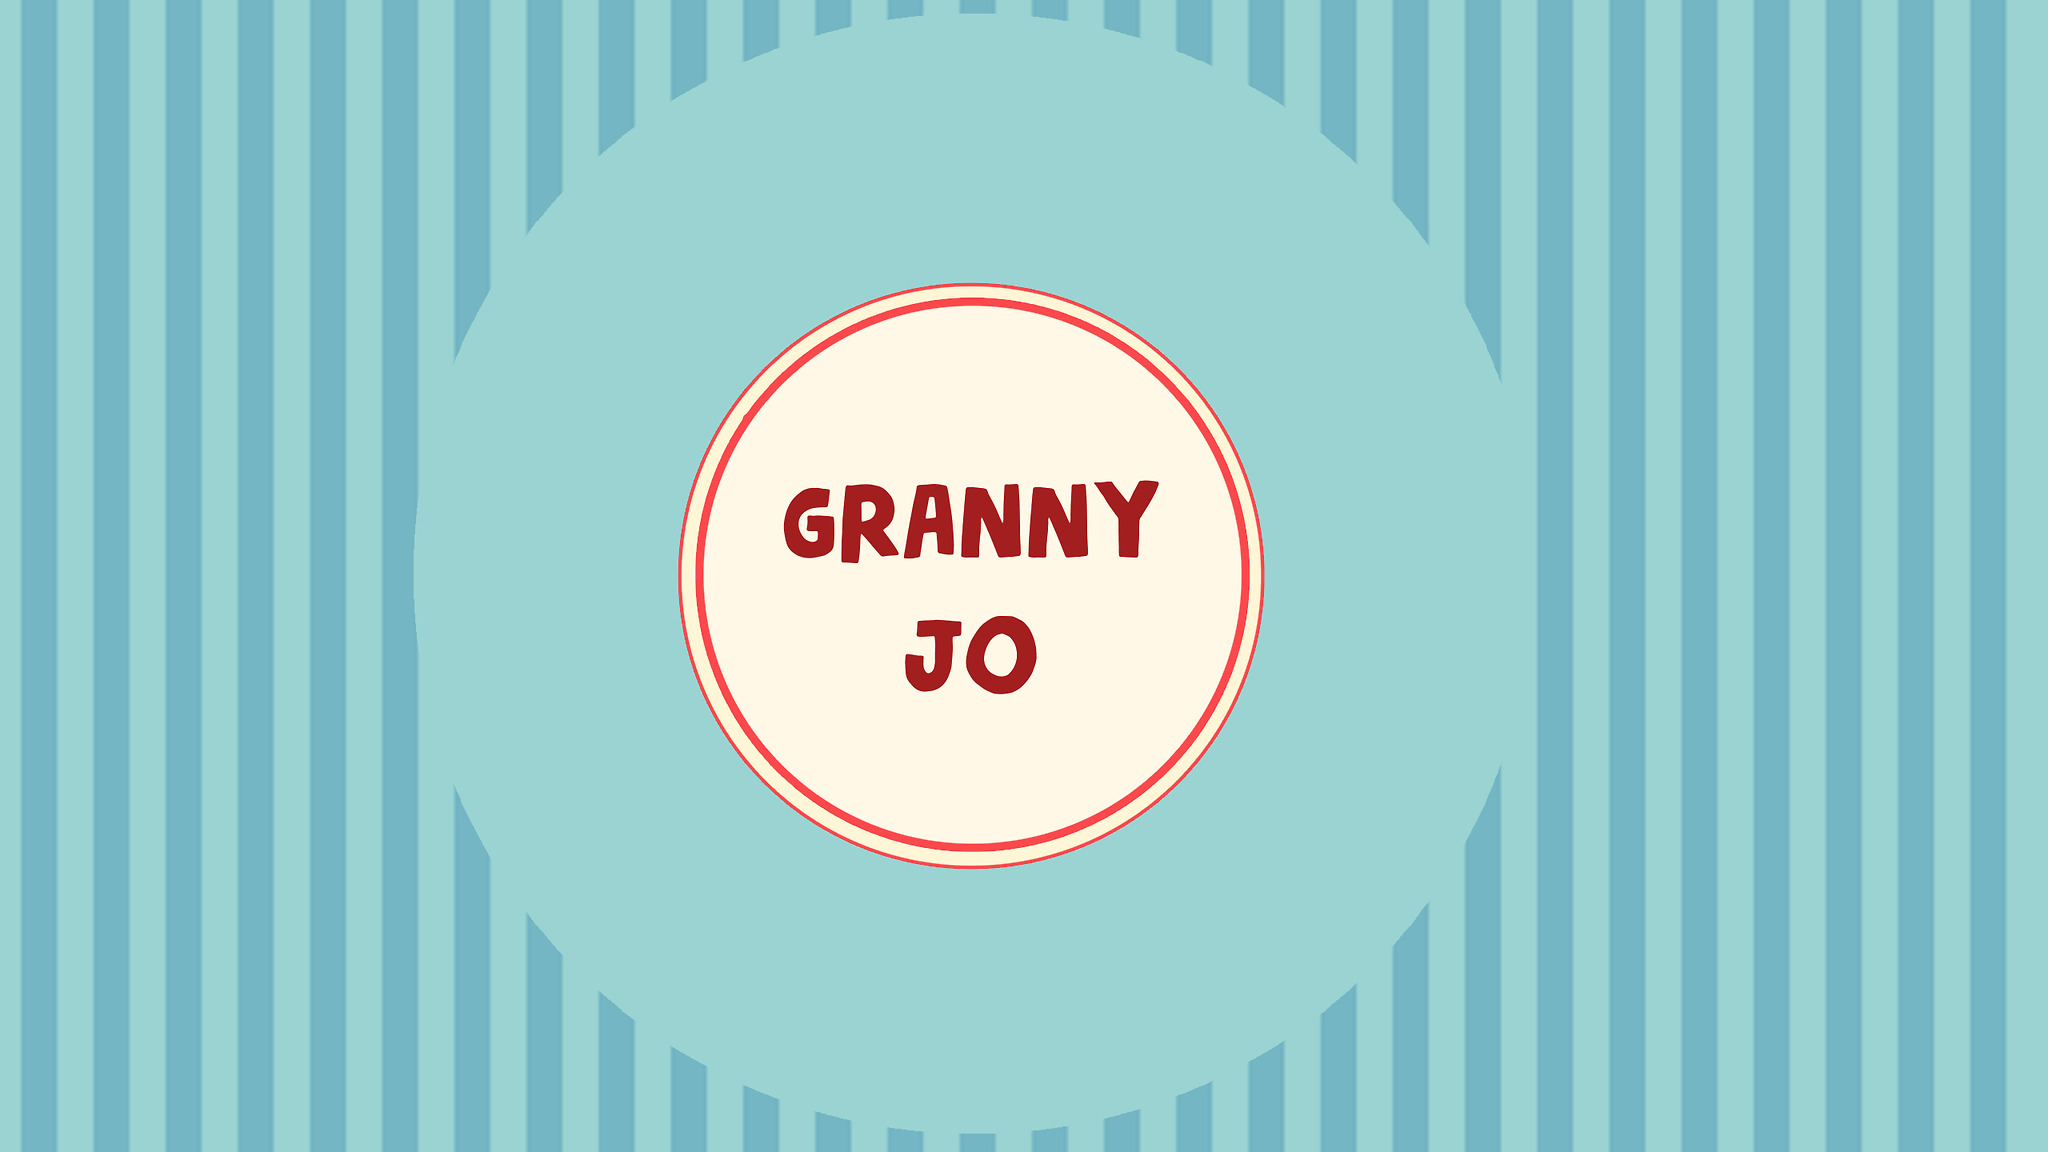 chena mae share granny on granny tumblr photos